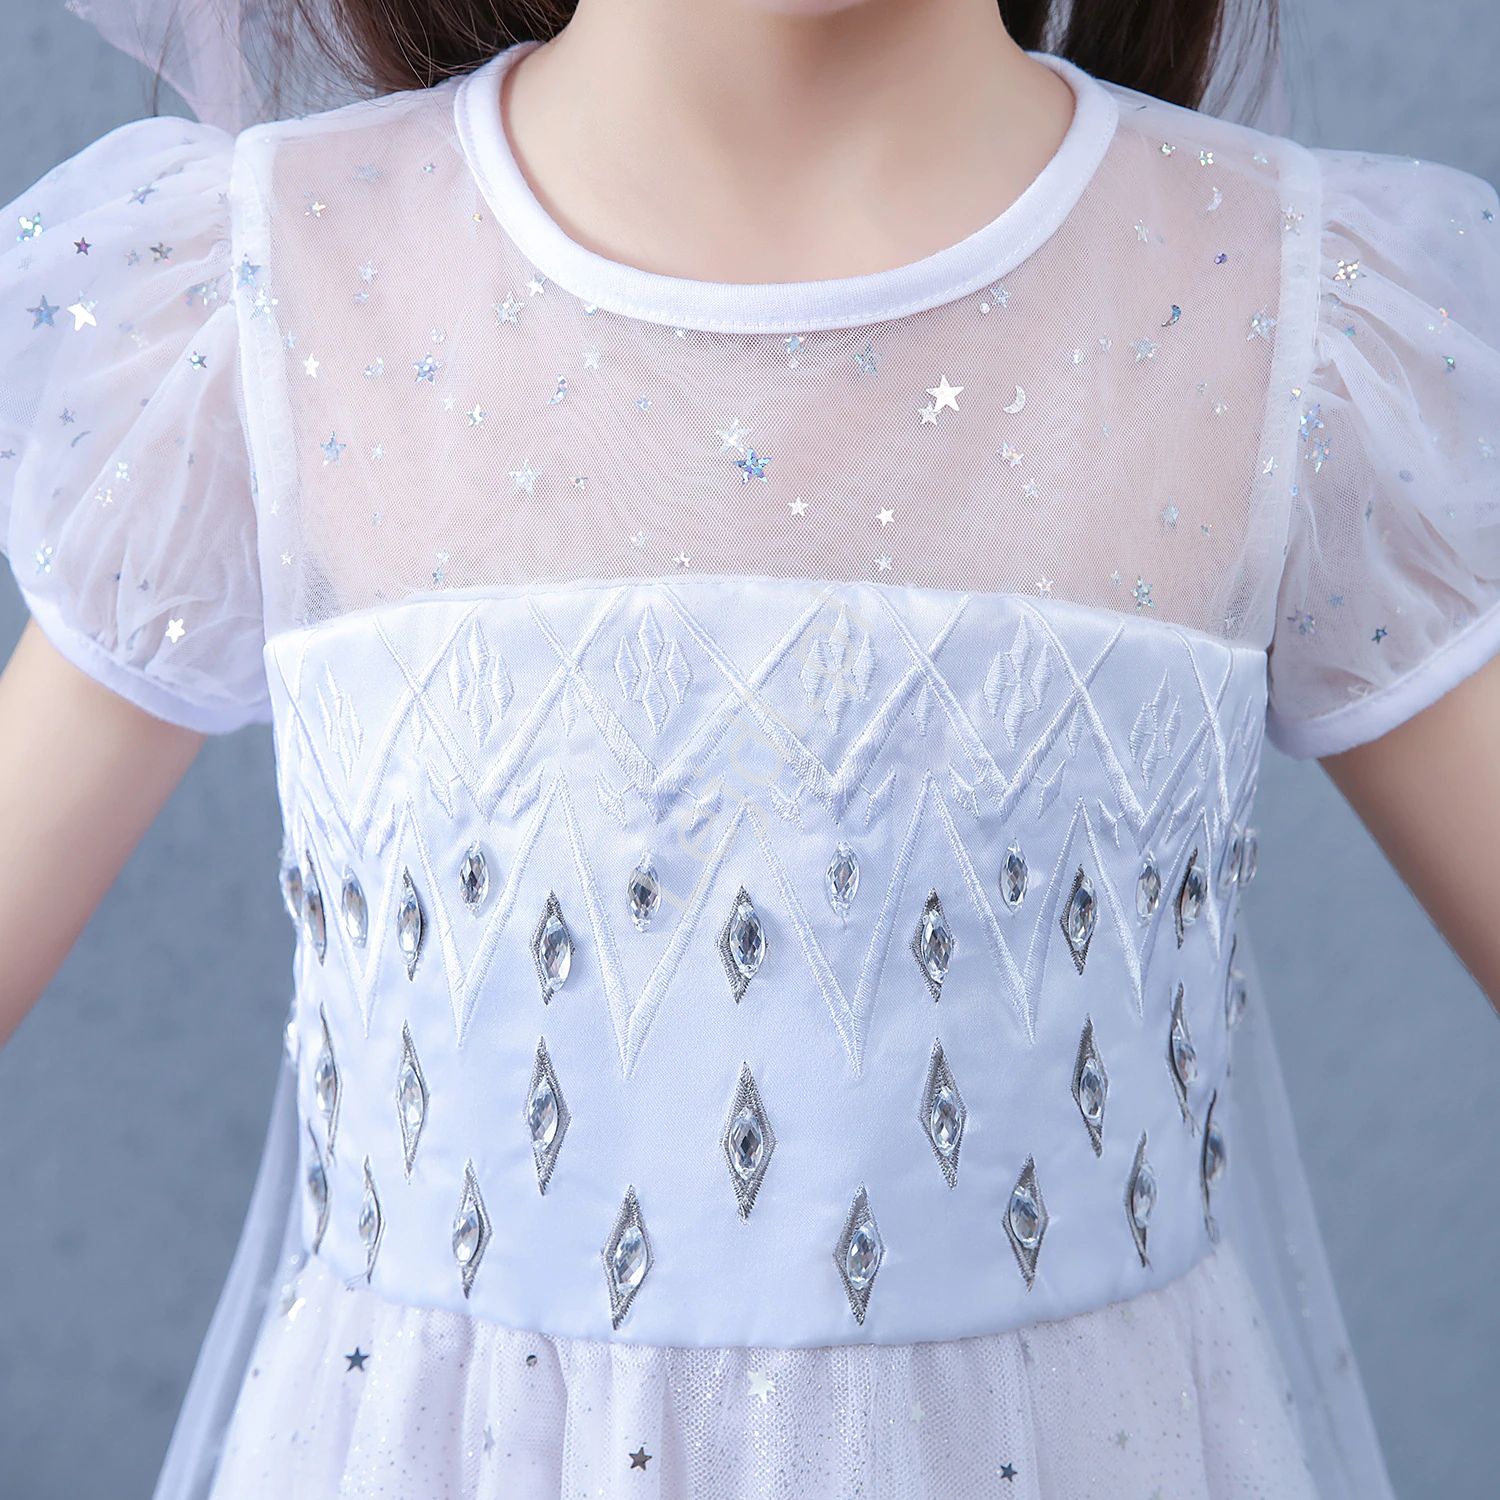 Frozen sukienka na bal, przebranie na bal karnawałowy, strój Elsy 1706